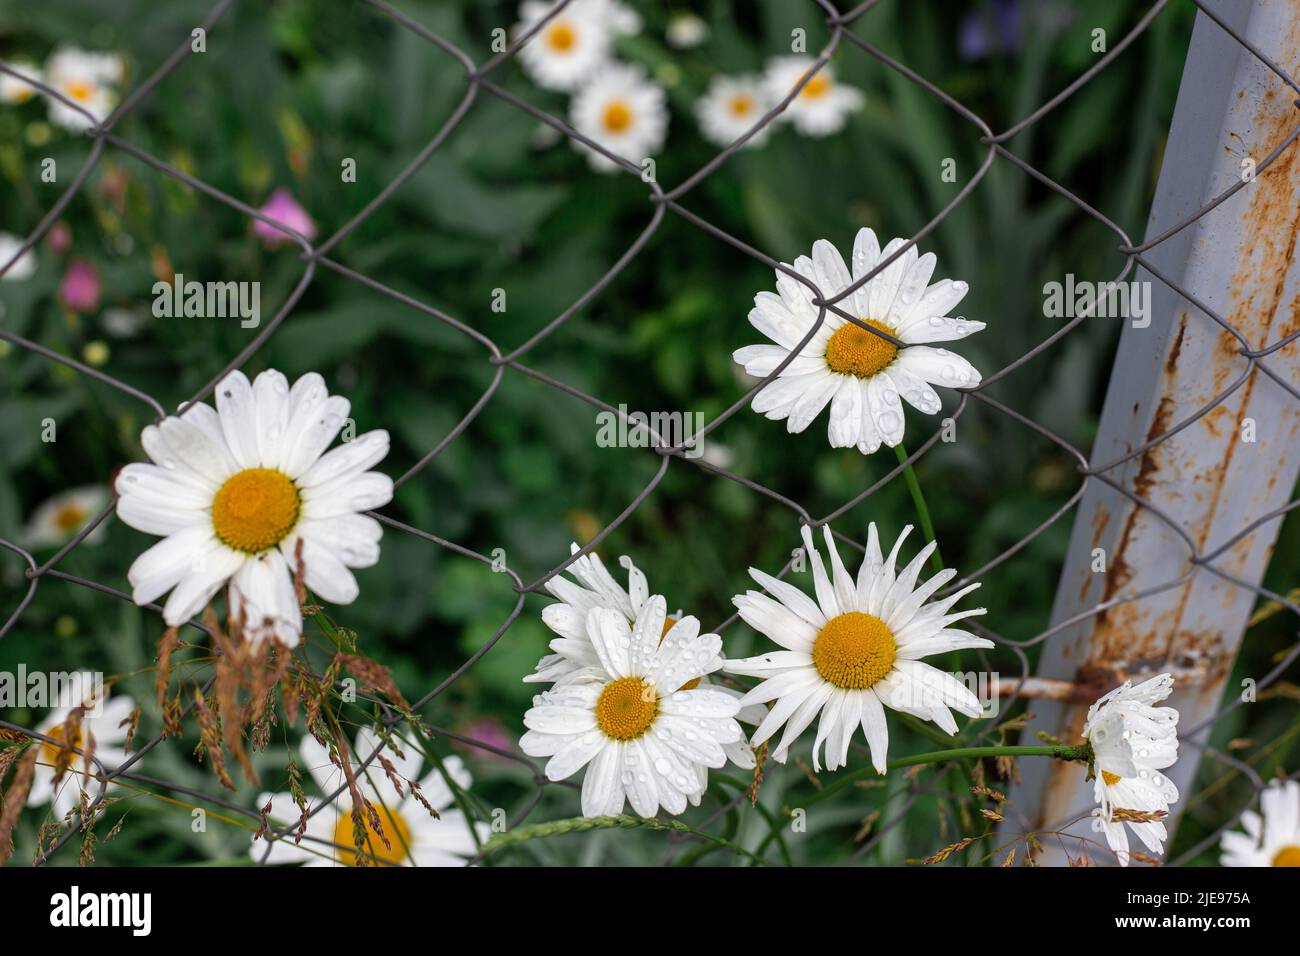 Kamille blüht hinter einem Metallgeflecht. Blumen im Garten. Stockfoto